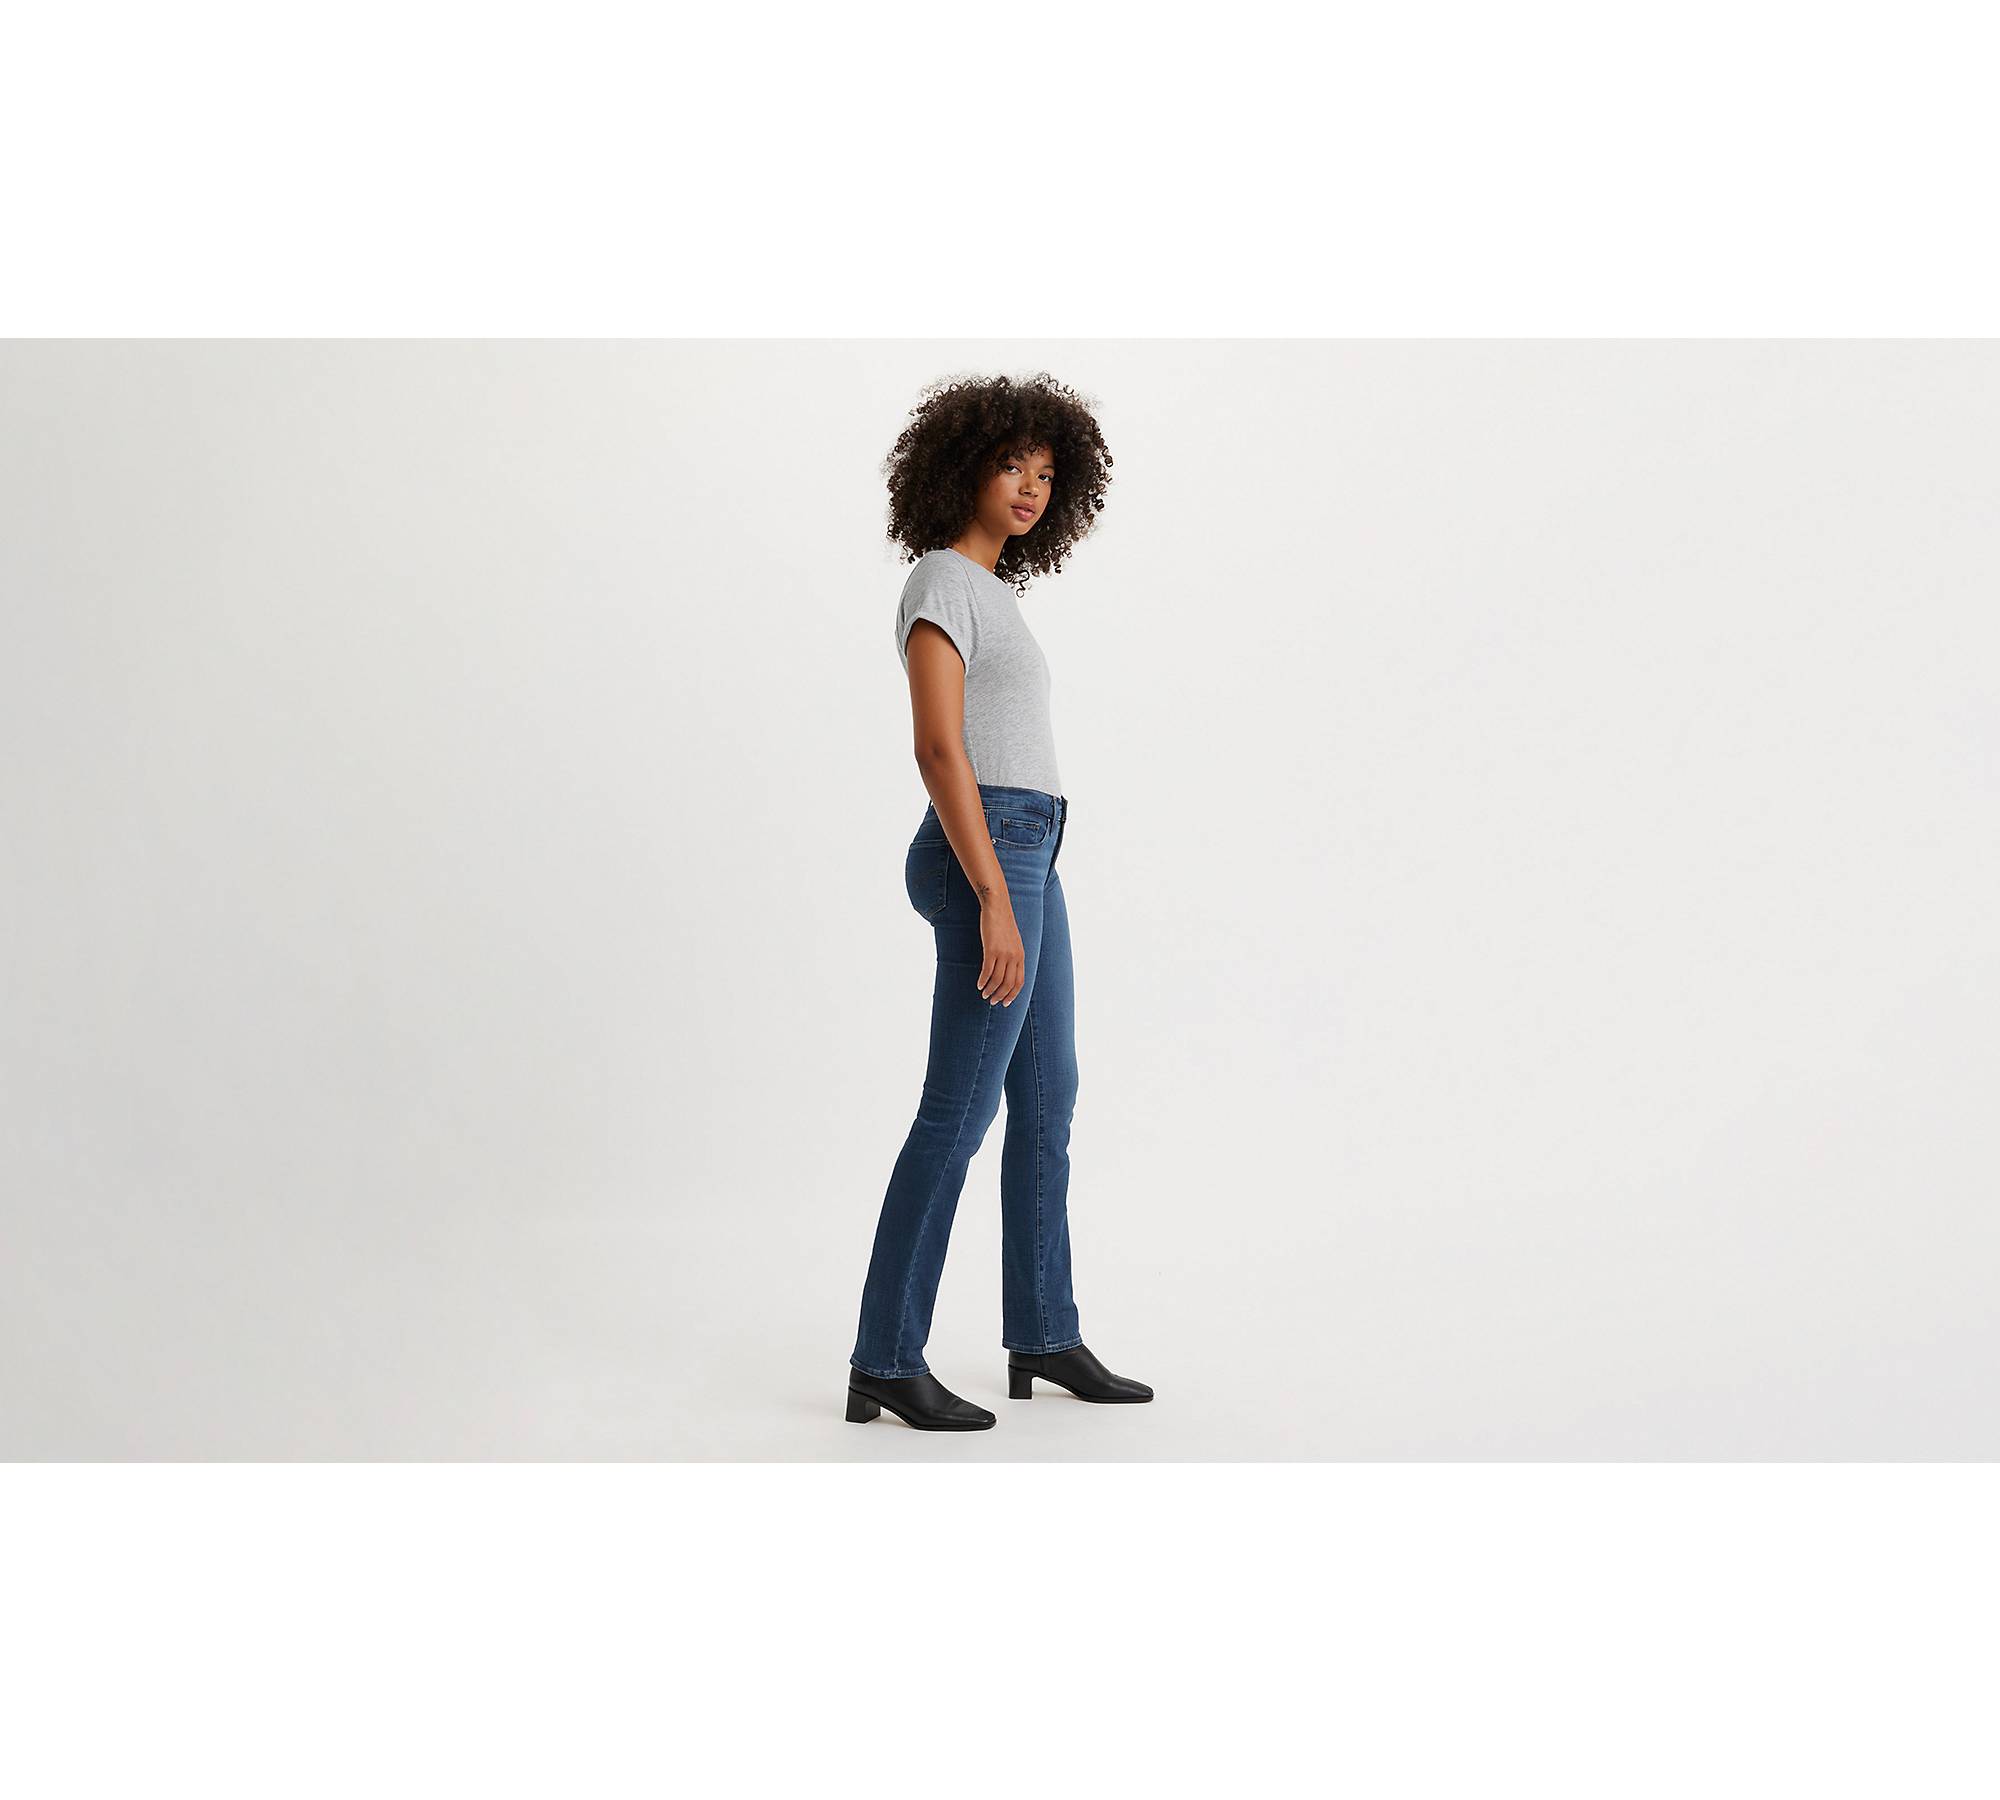 Women's Tapered Leg Jeans & Denim